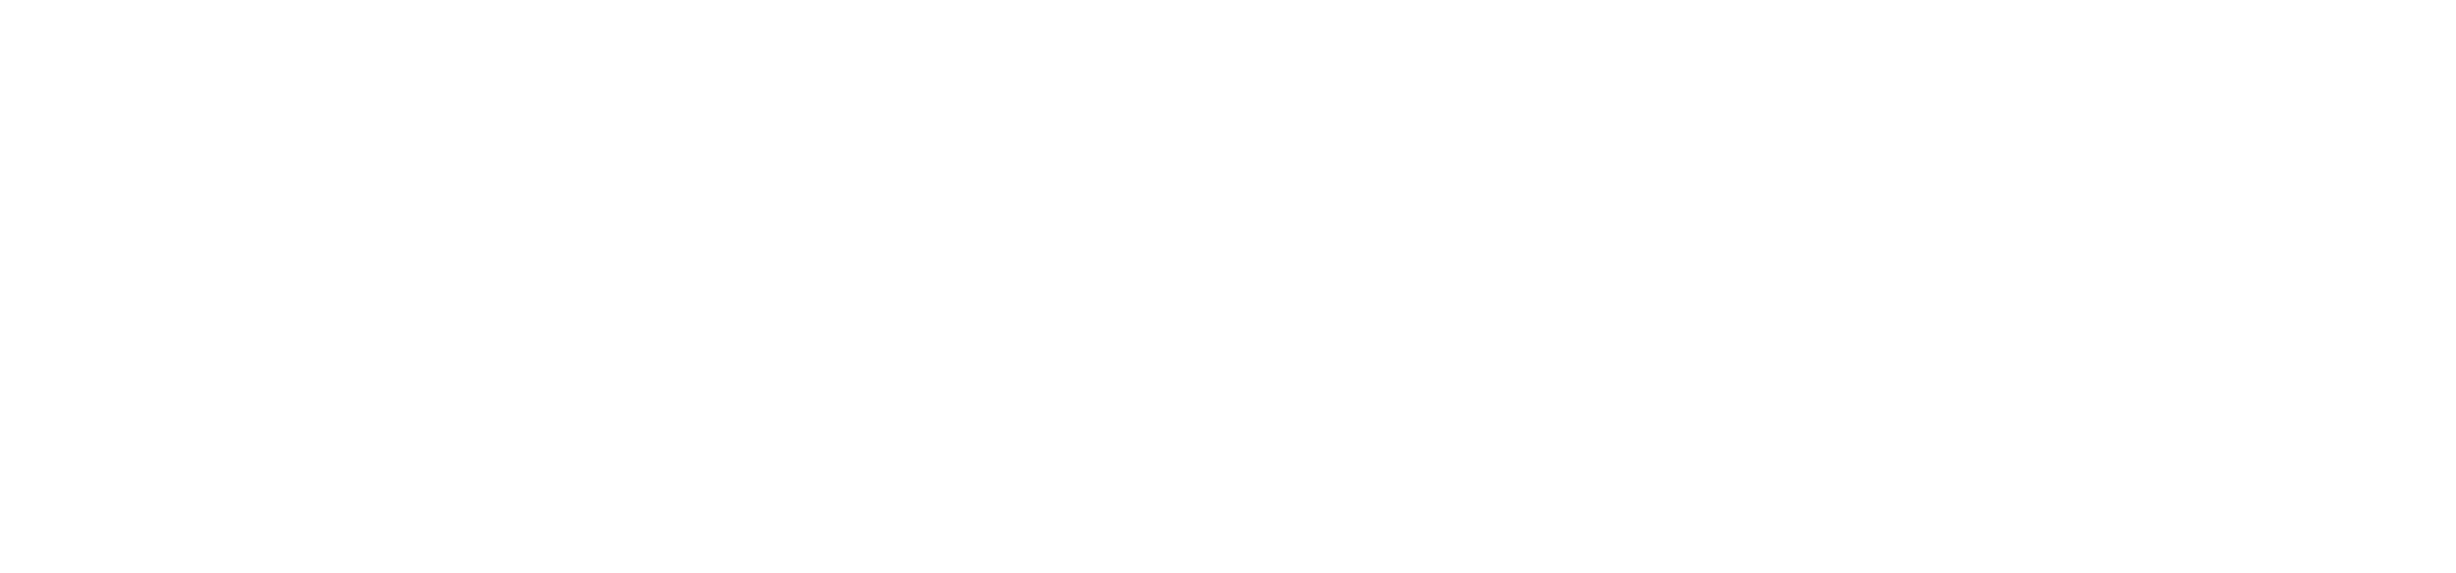 Logo de Beneva